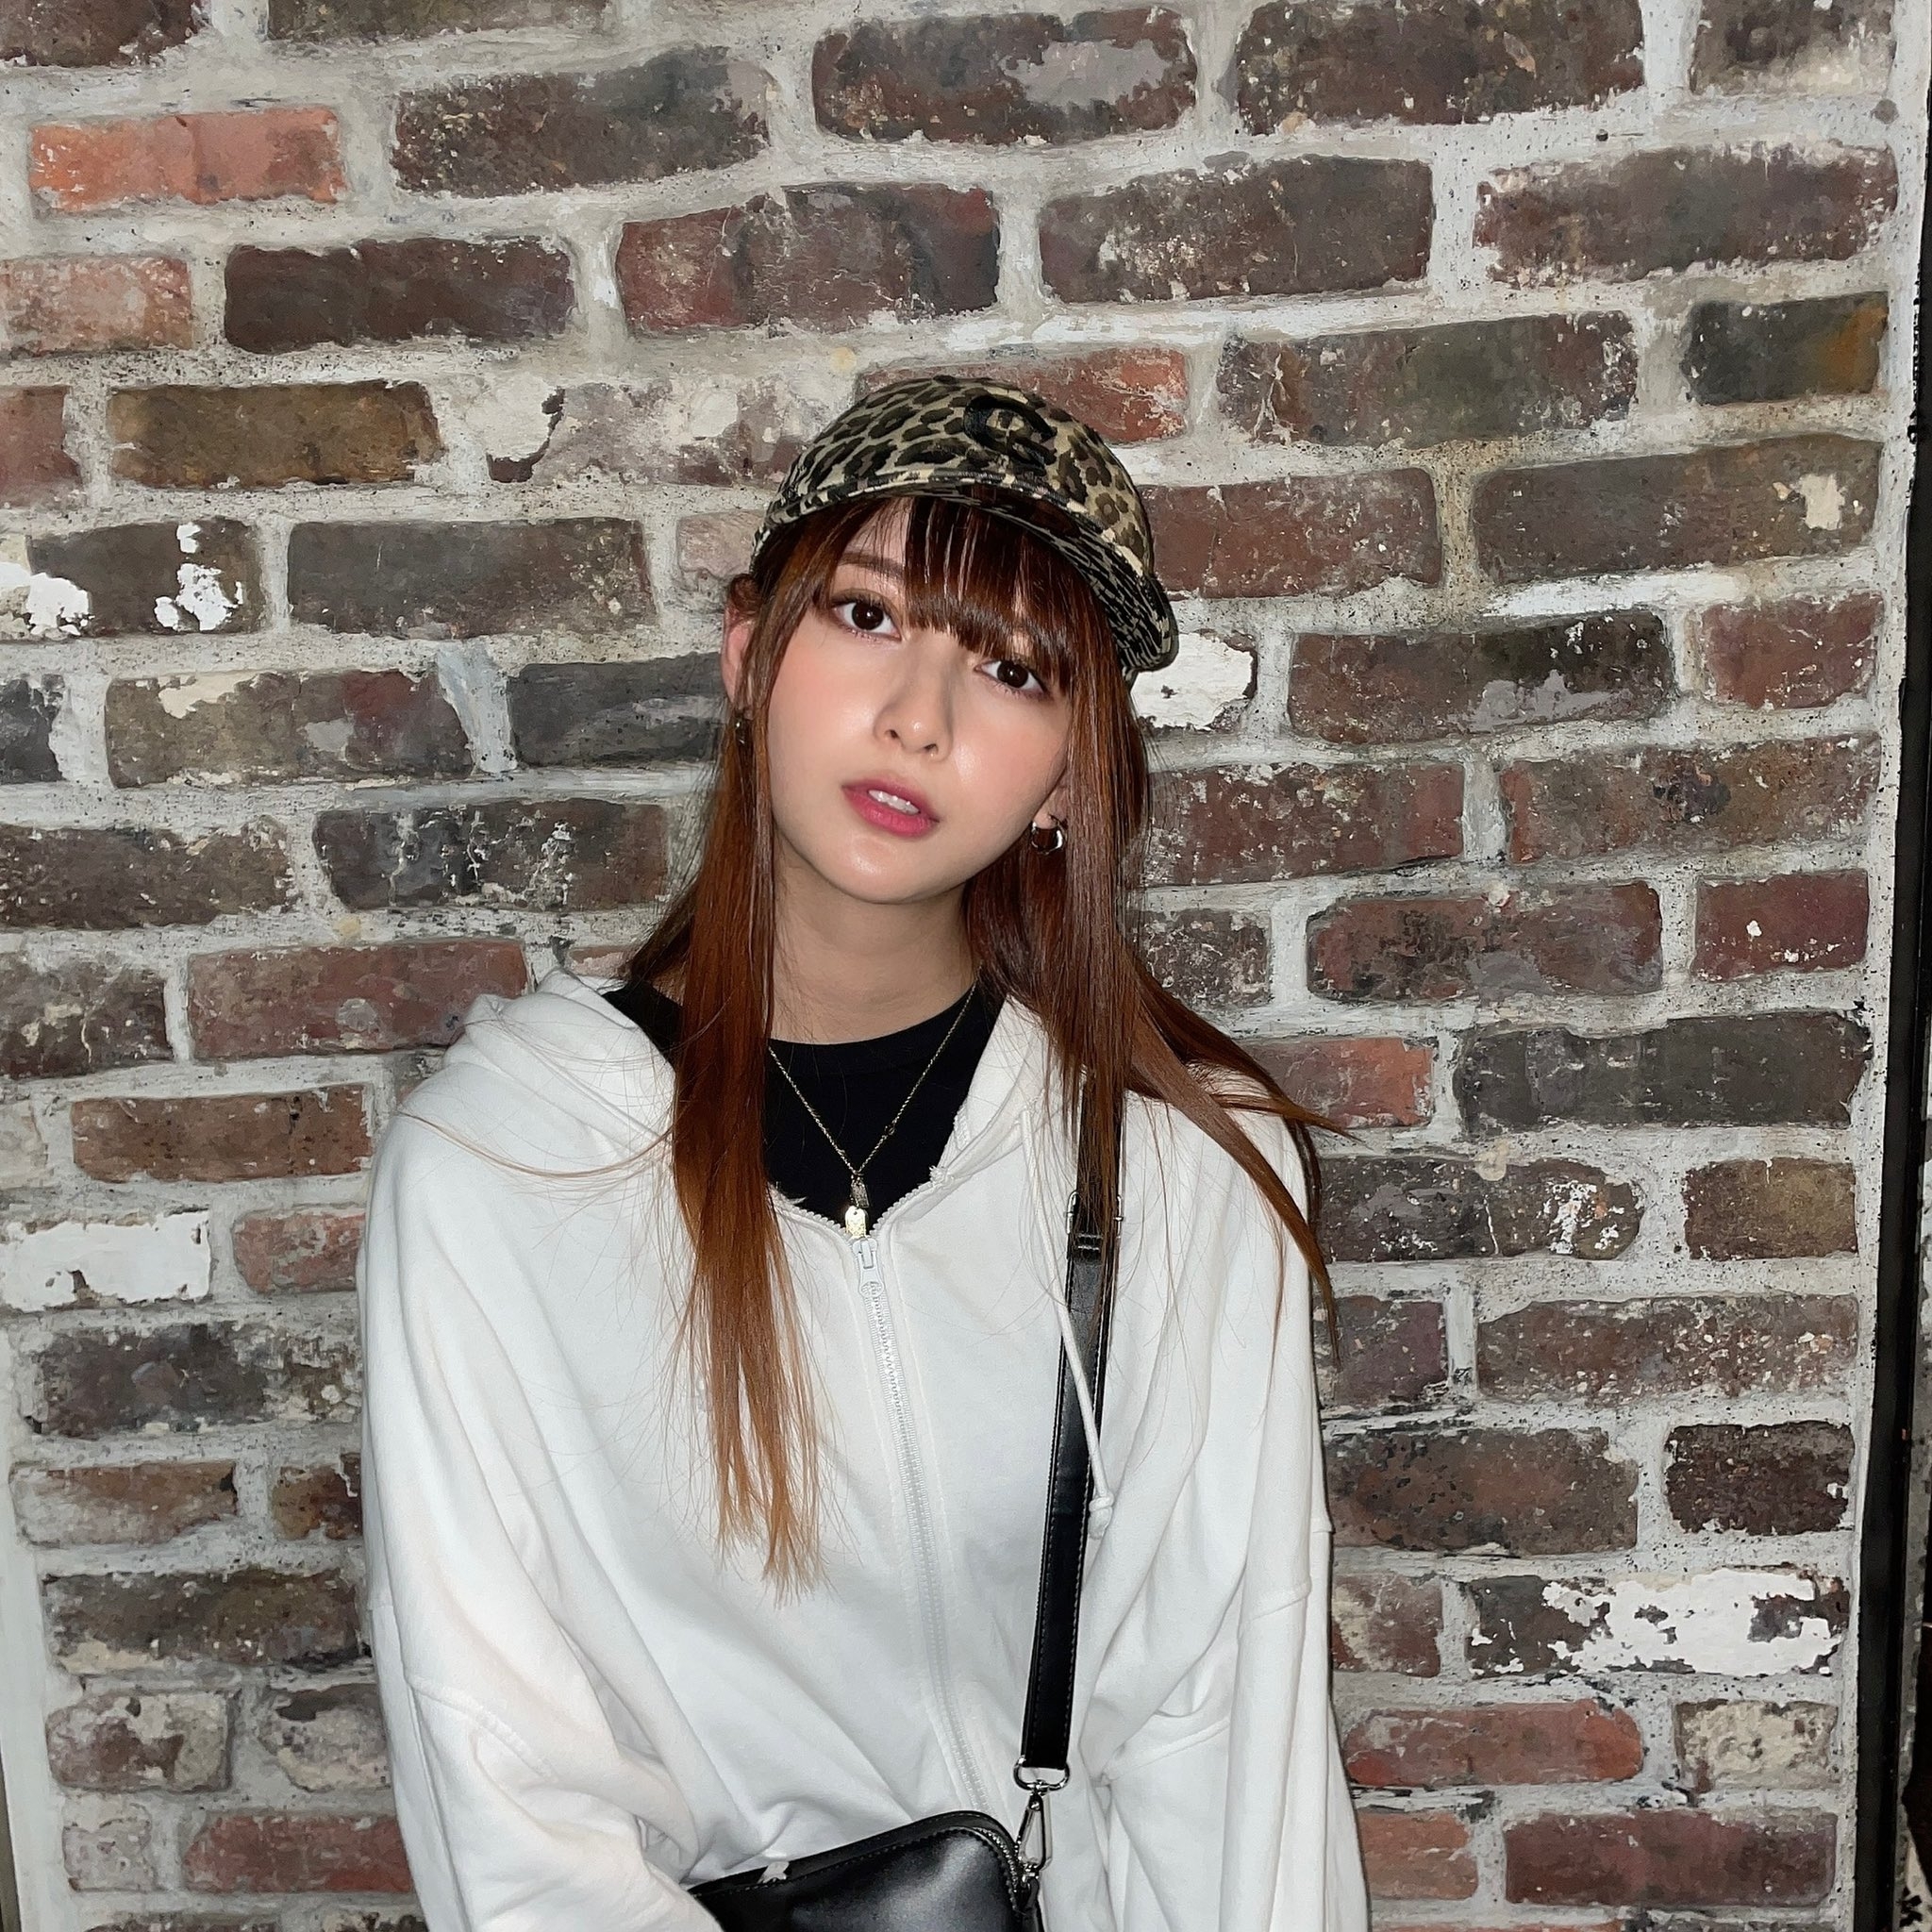 日本模特,写真偶像アンジェラ芽衣angela芽衣日菲混血儿个人资料